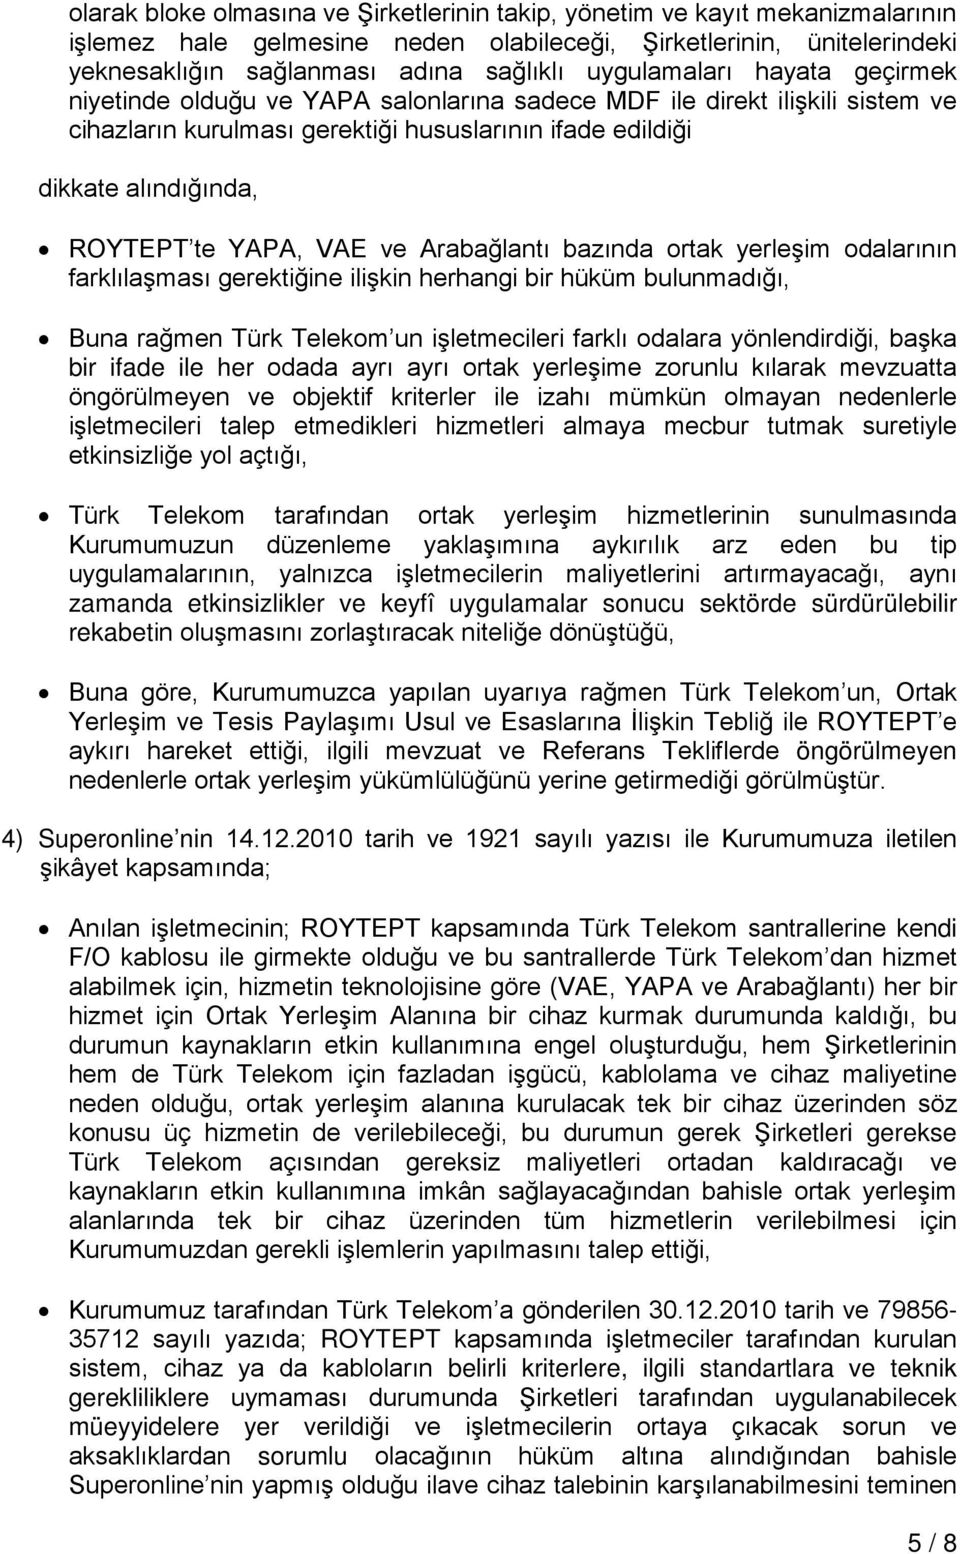 YAPA, VAE ve Arabağlantı bazında ortak yerleşim odalarının farklılaşması gerektiğine ilişkin herhangi bir hüküm bulunmadığı, Buna rağmen Türk Telekom un işletmecileri farklı odalara yönlendirdiği,